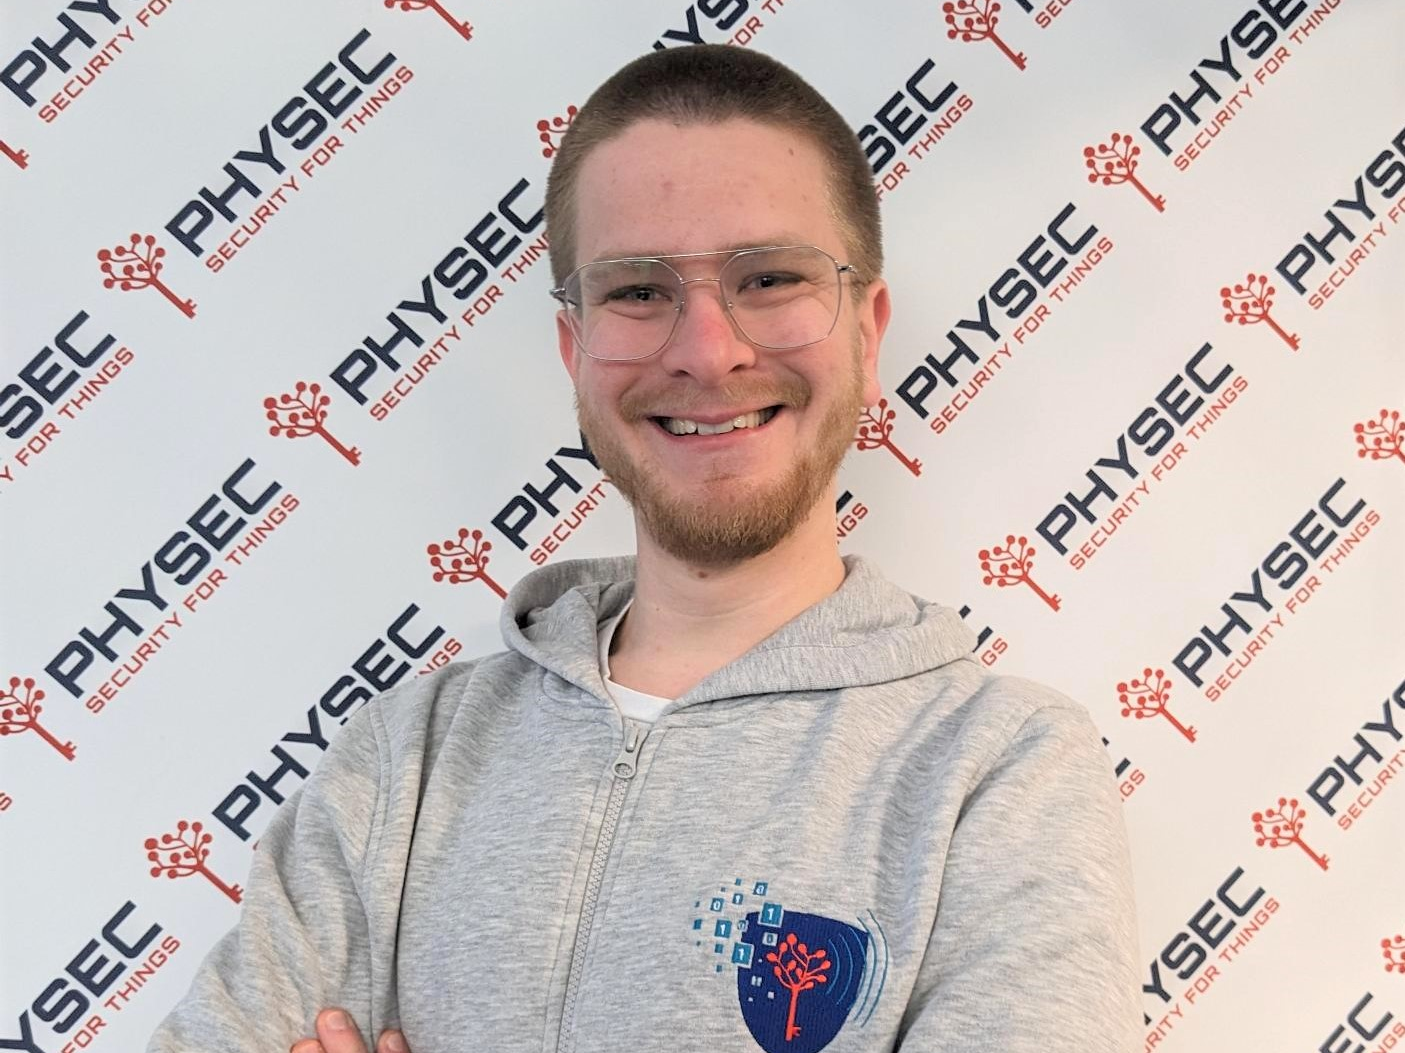 Porträt von Lars Peuckmann, der ein graues Kapuzensweatshirt mit dem Physec-Logo trägt